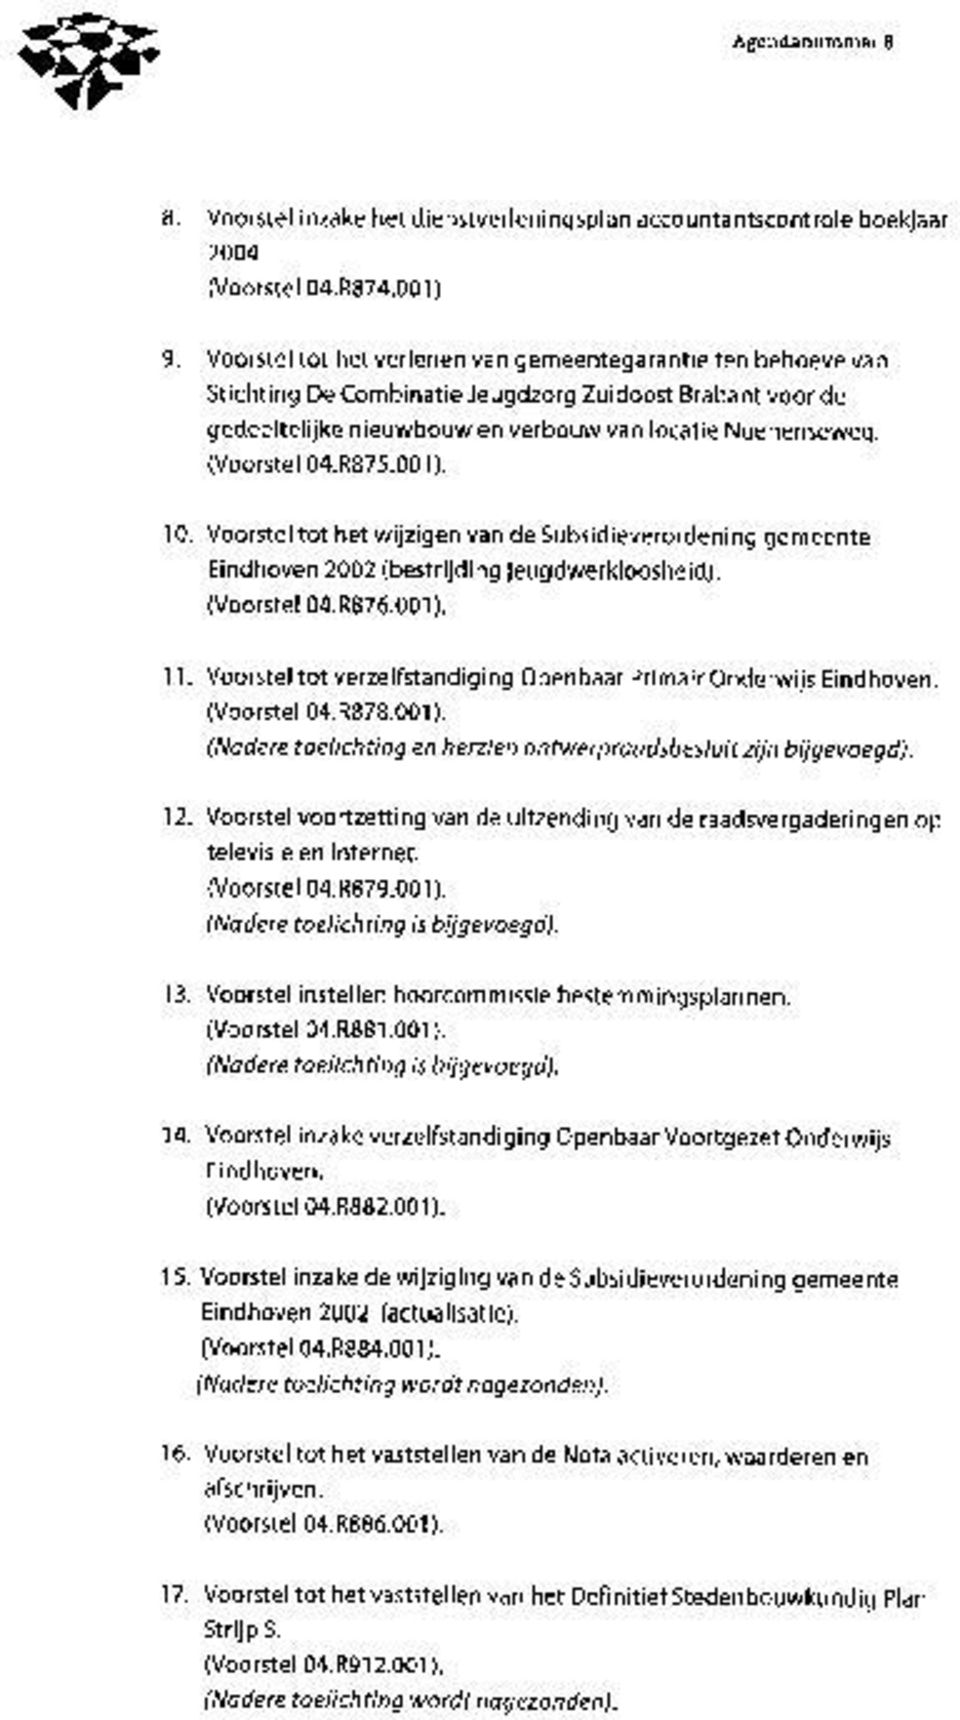 001). 10. Voorstel tot het wijzigen van de Subsidieverordening gemeente Eindhoven 2002 (bestrijding jeugdwerkloosheid). (Voorstel 04.R876.001). 11.